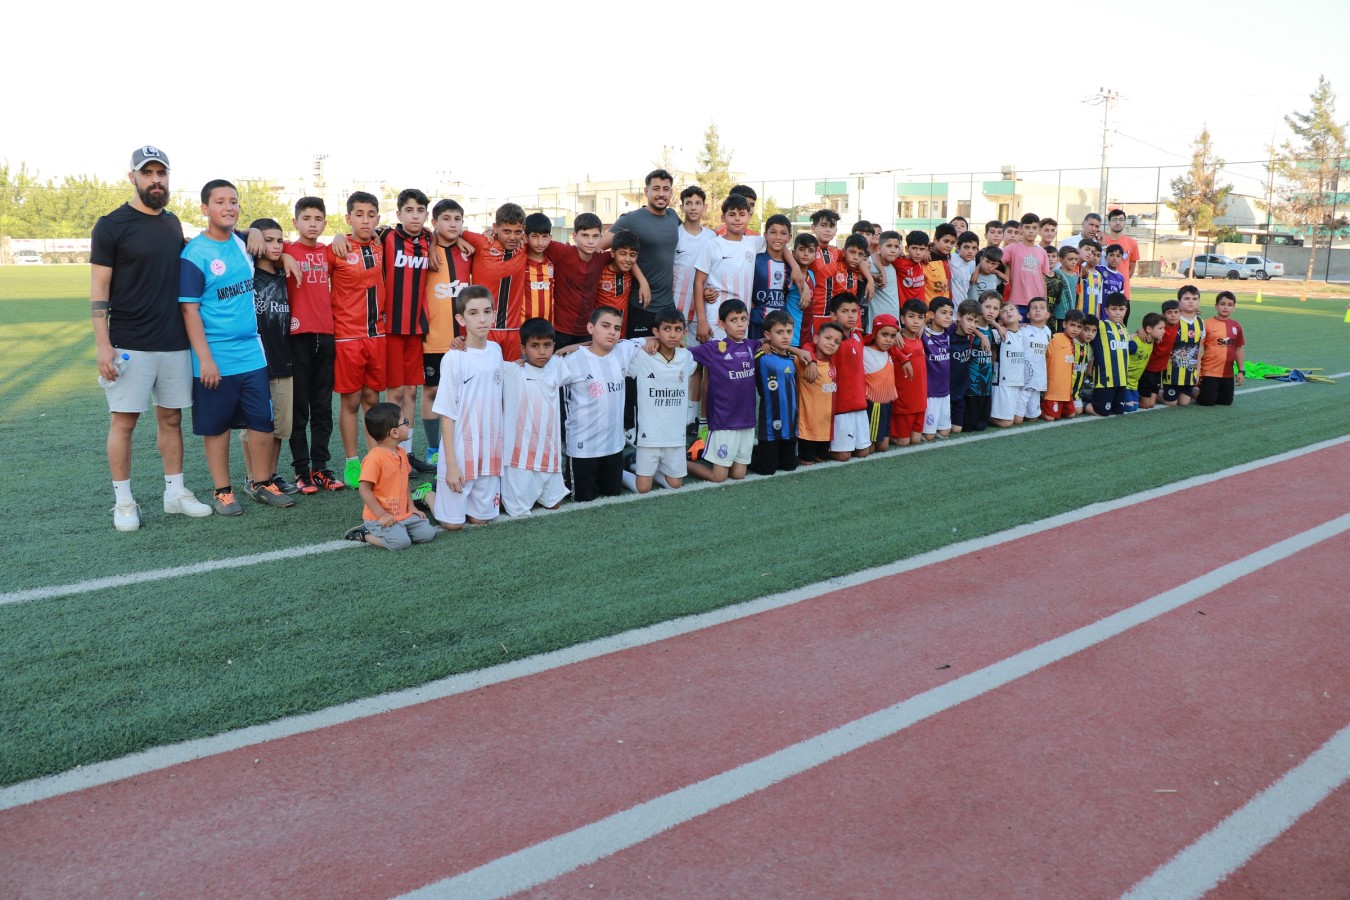 Haydi Gençler 06-18 yaş arası Futbol Kursları Başladı.